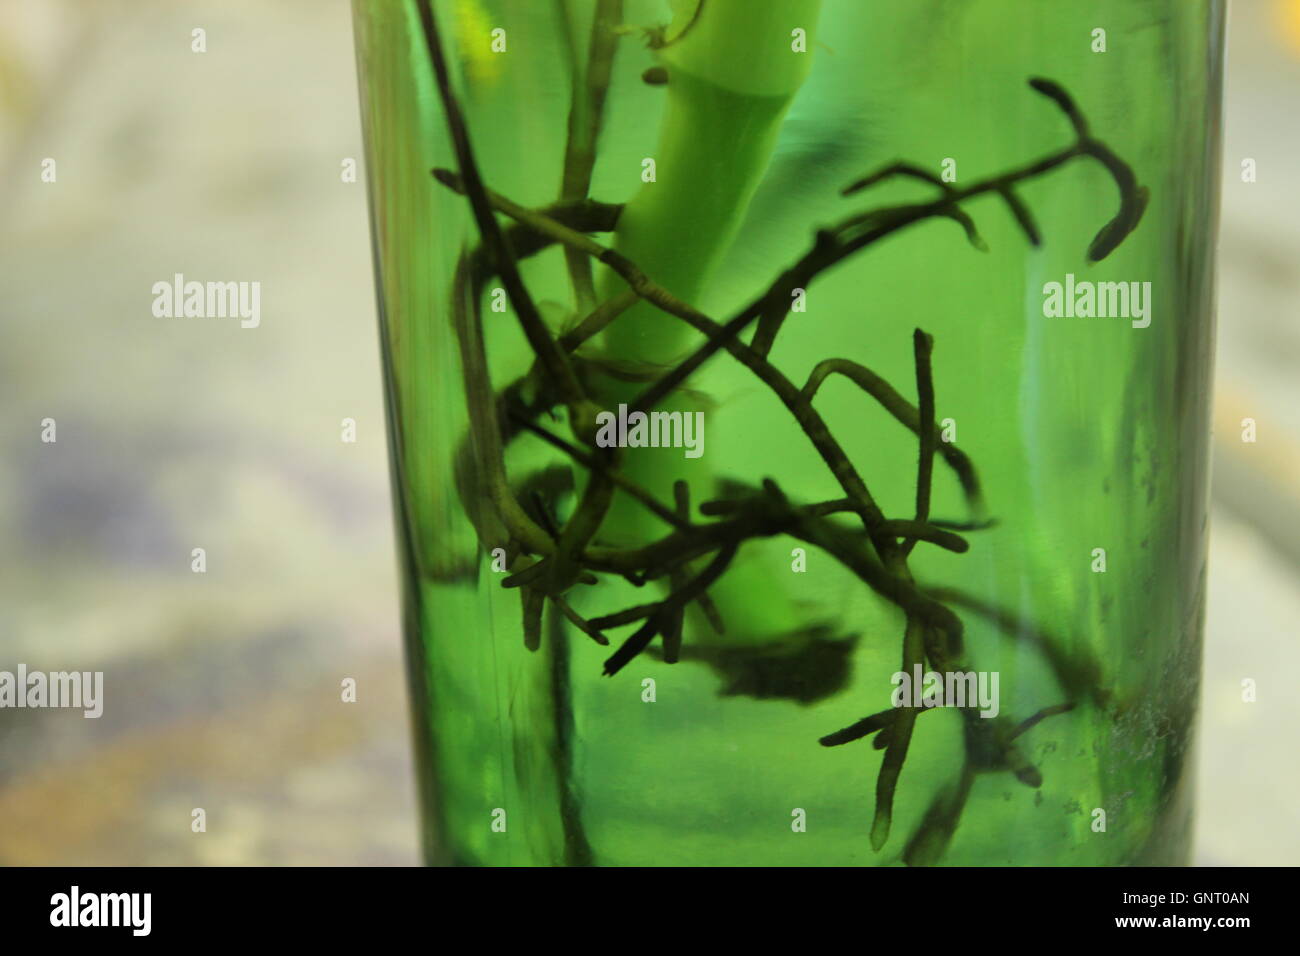 Einer Tiefe von Feld (Hintergrundunschärfe) Foto ein Pflanzen-Wurzeln in einer grünen Flasche. Stockfoto